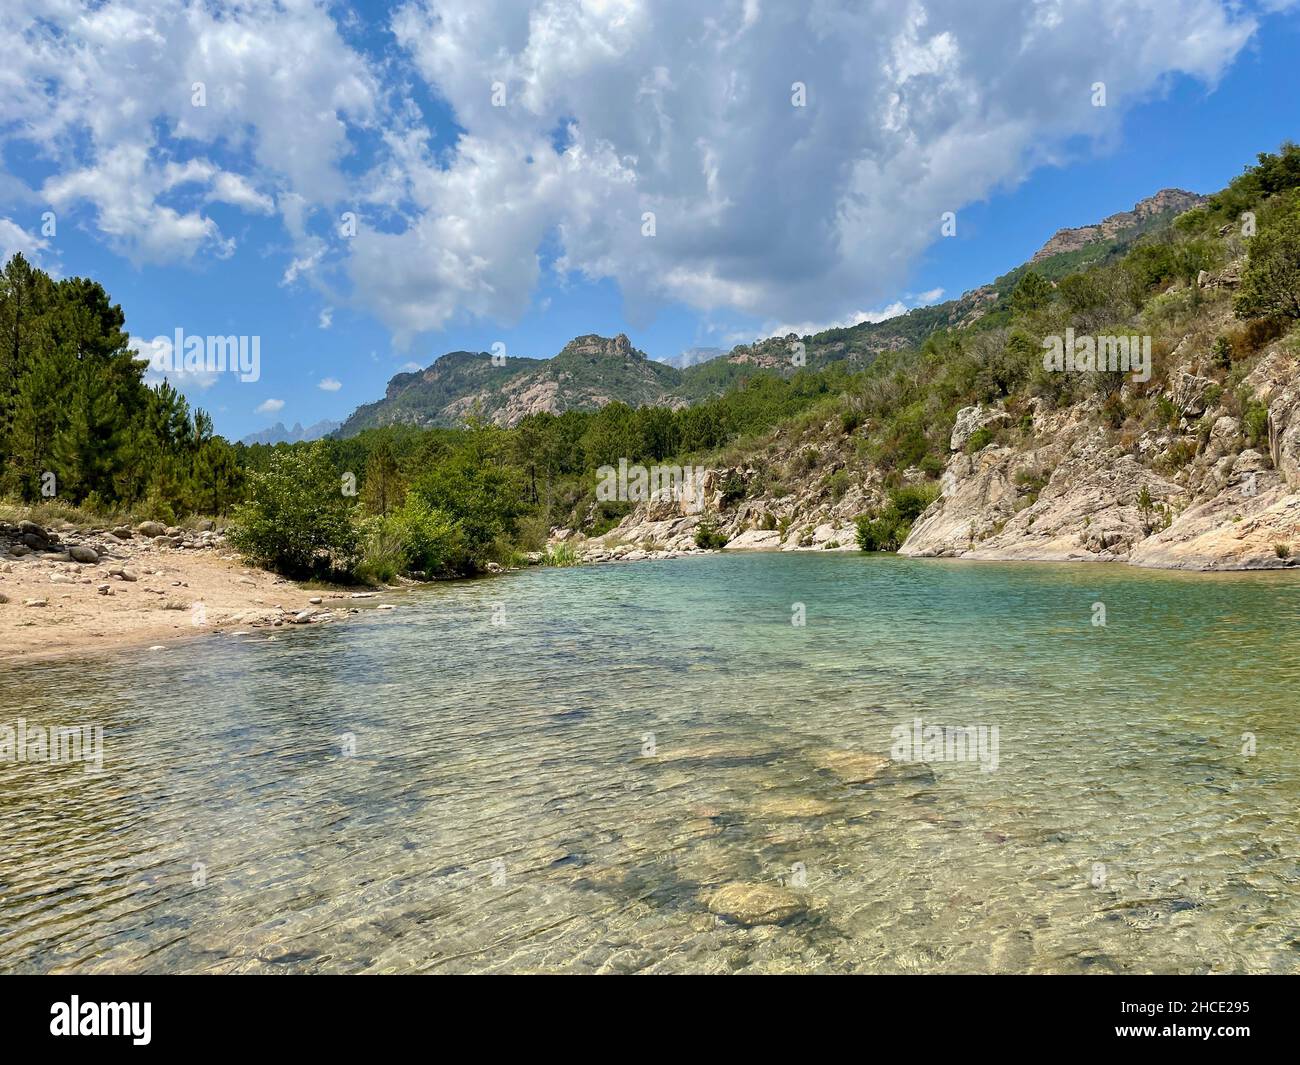 Rivière Solenzara avec eau turquoise et plages de sable au pied des pics de Bavella en Corse du Sud, France. Banque D'Images